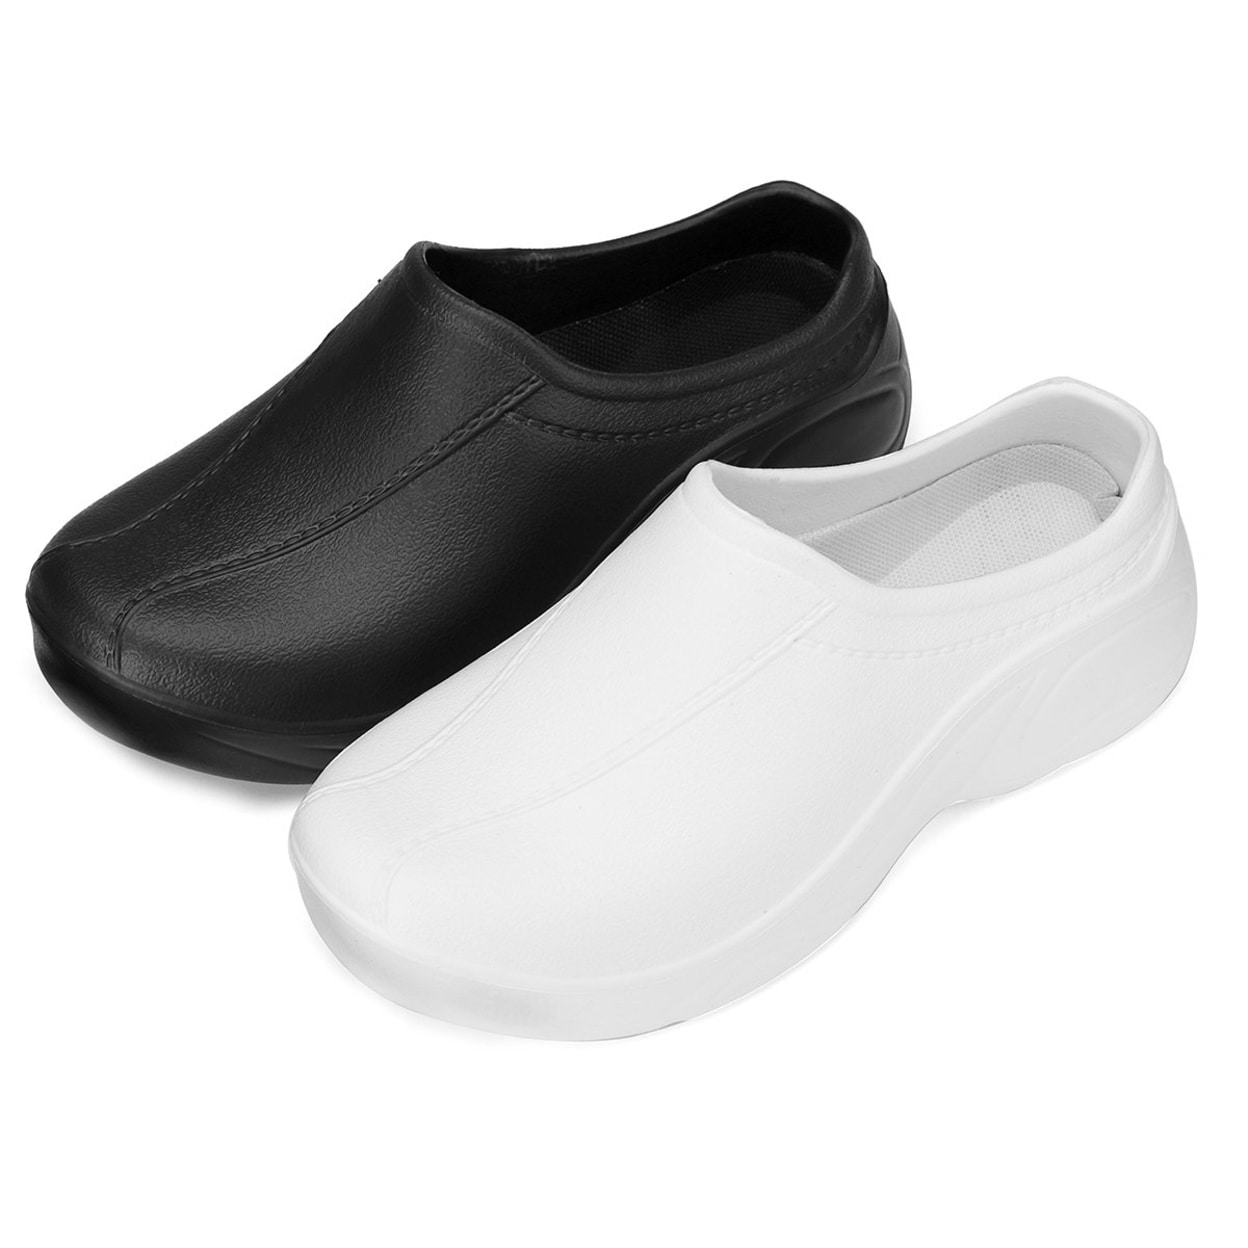 waterproof slippers for ladies